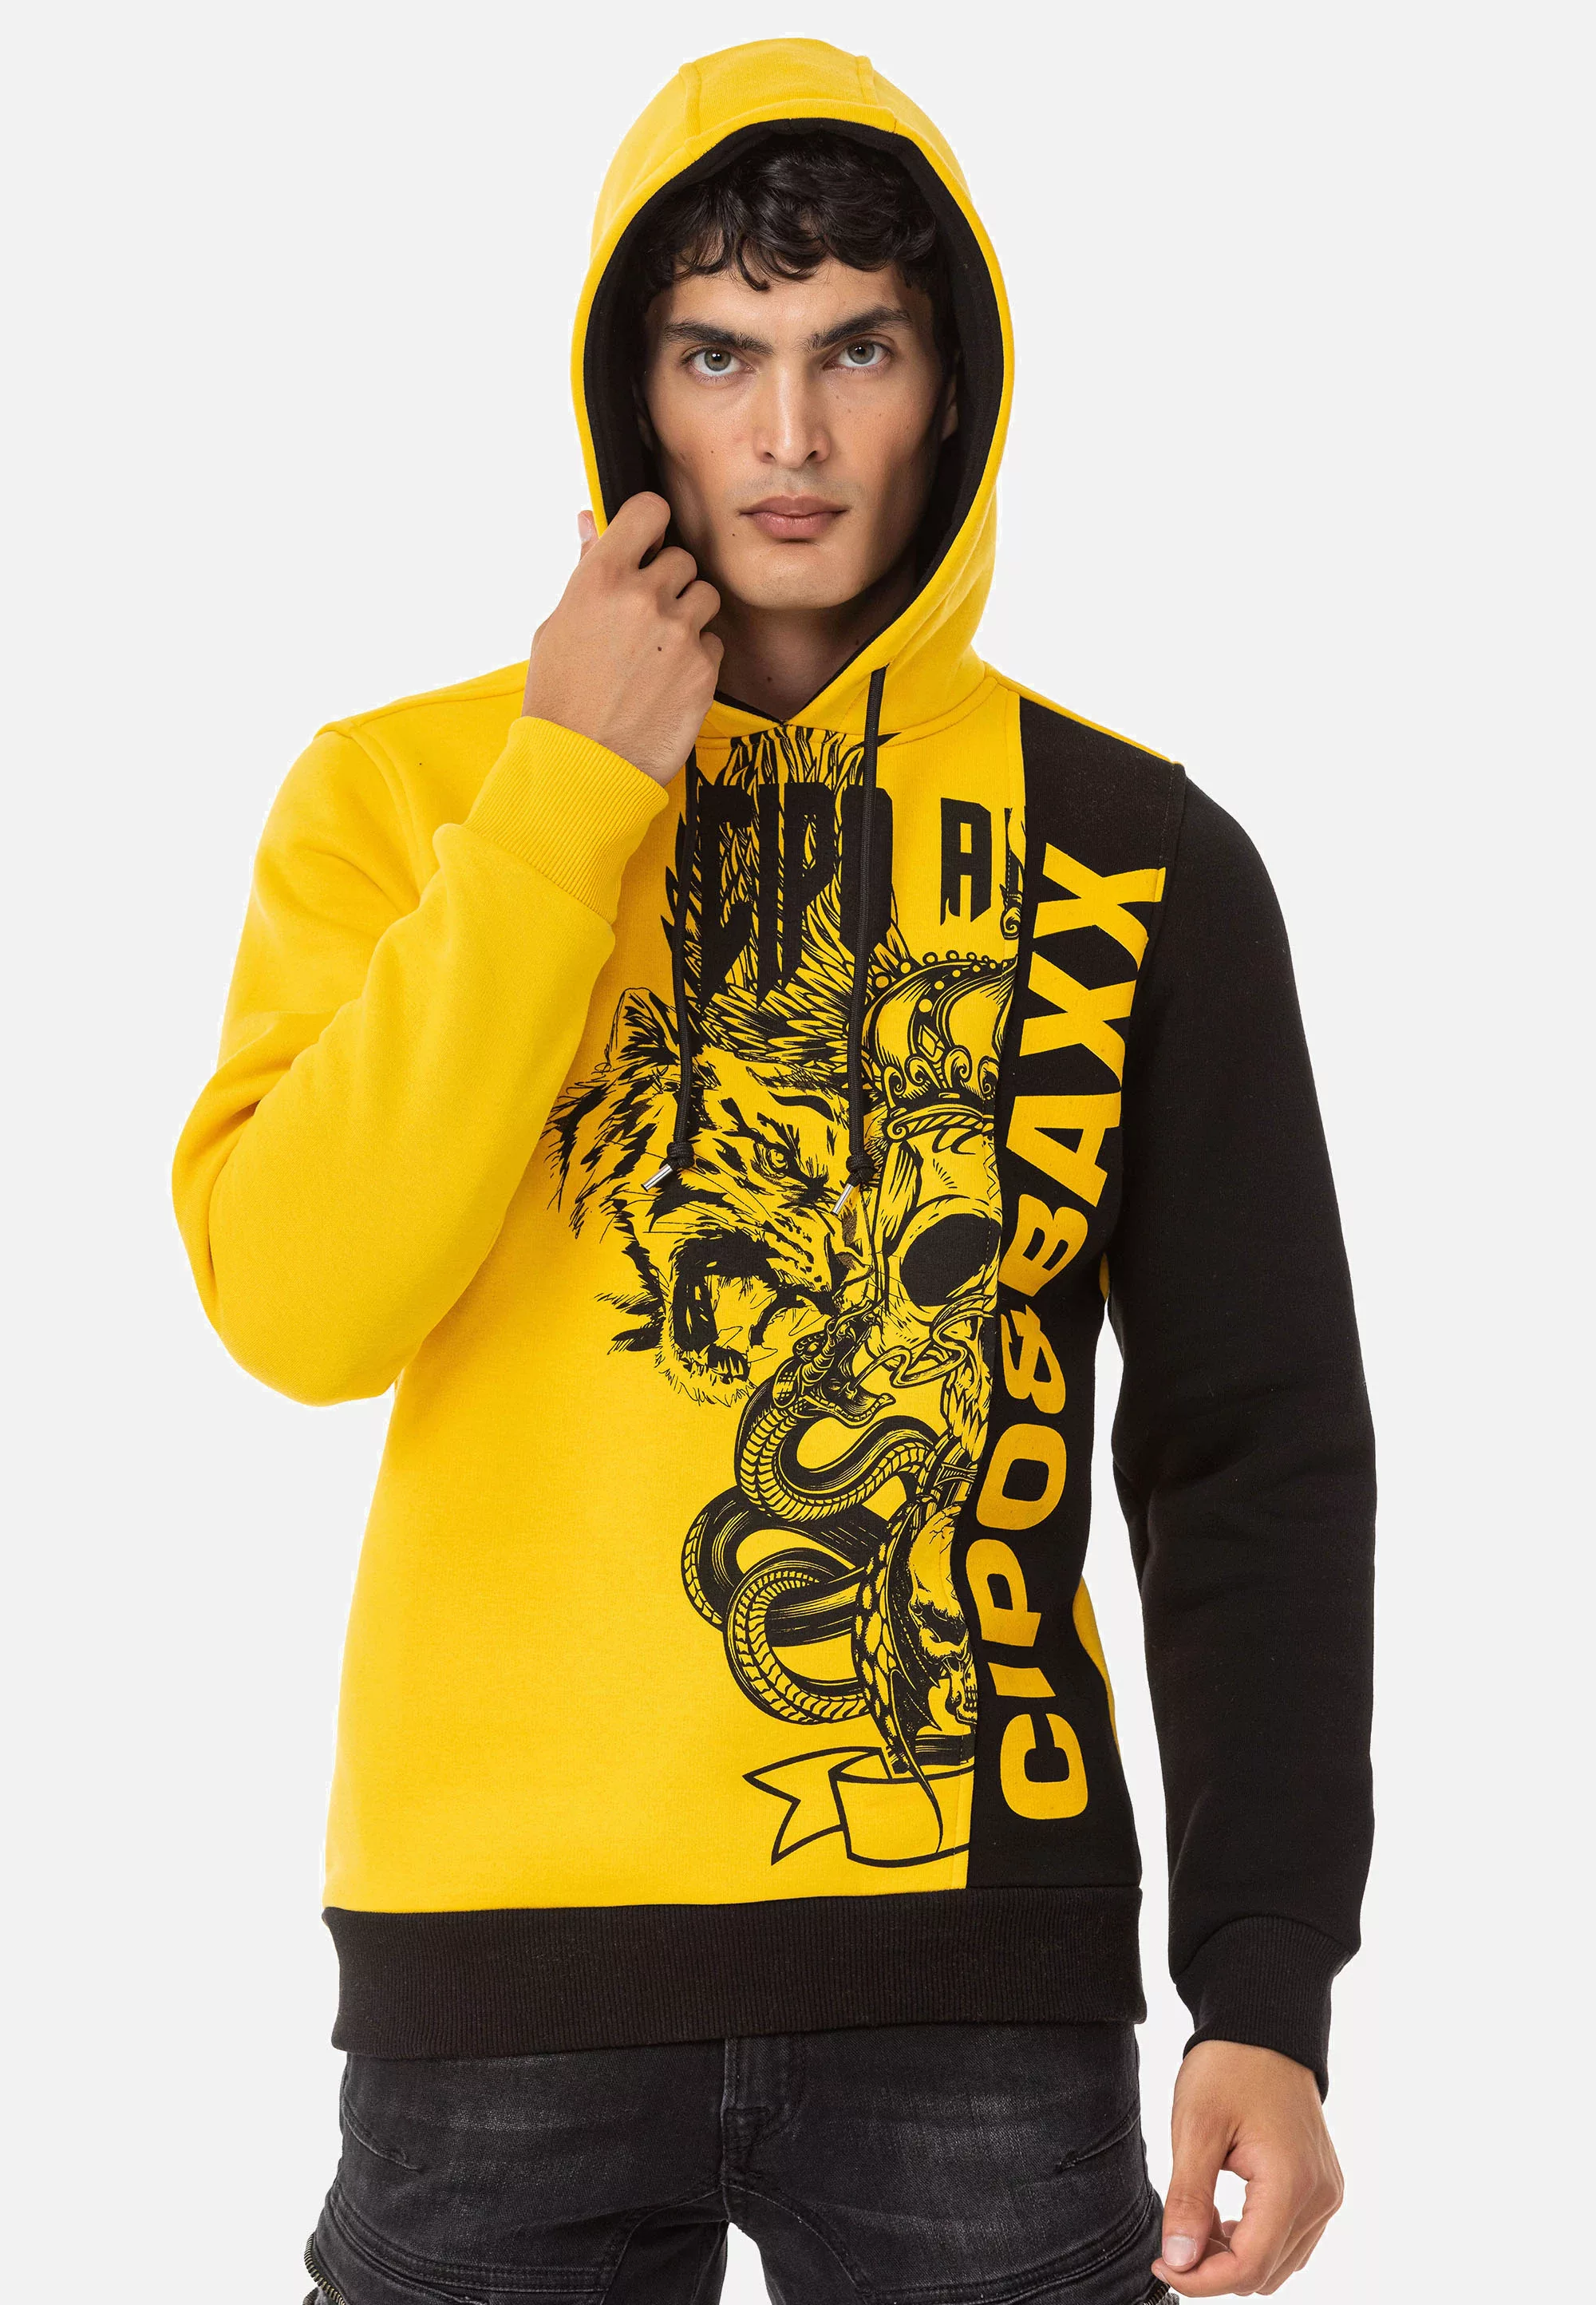 Cipo & Baxx Kapuzensweatshirt günstig online kaufen